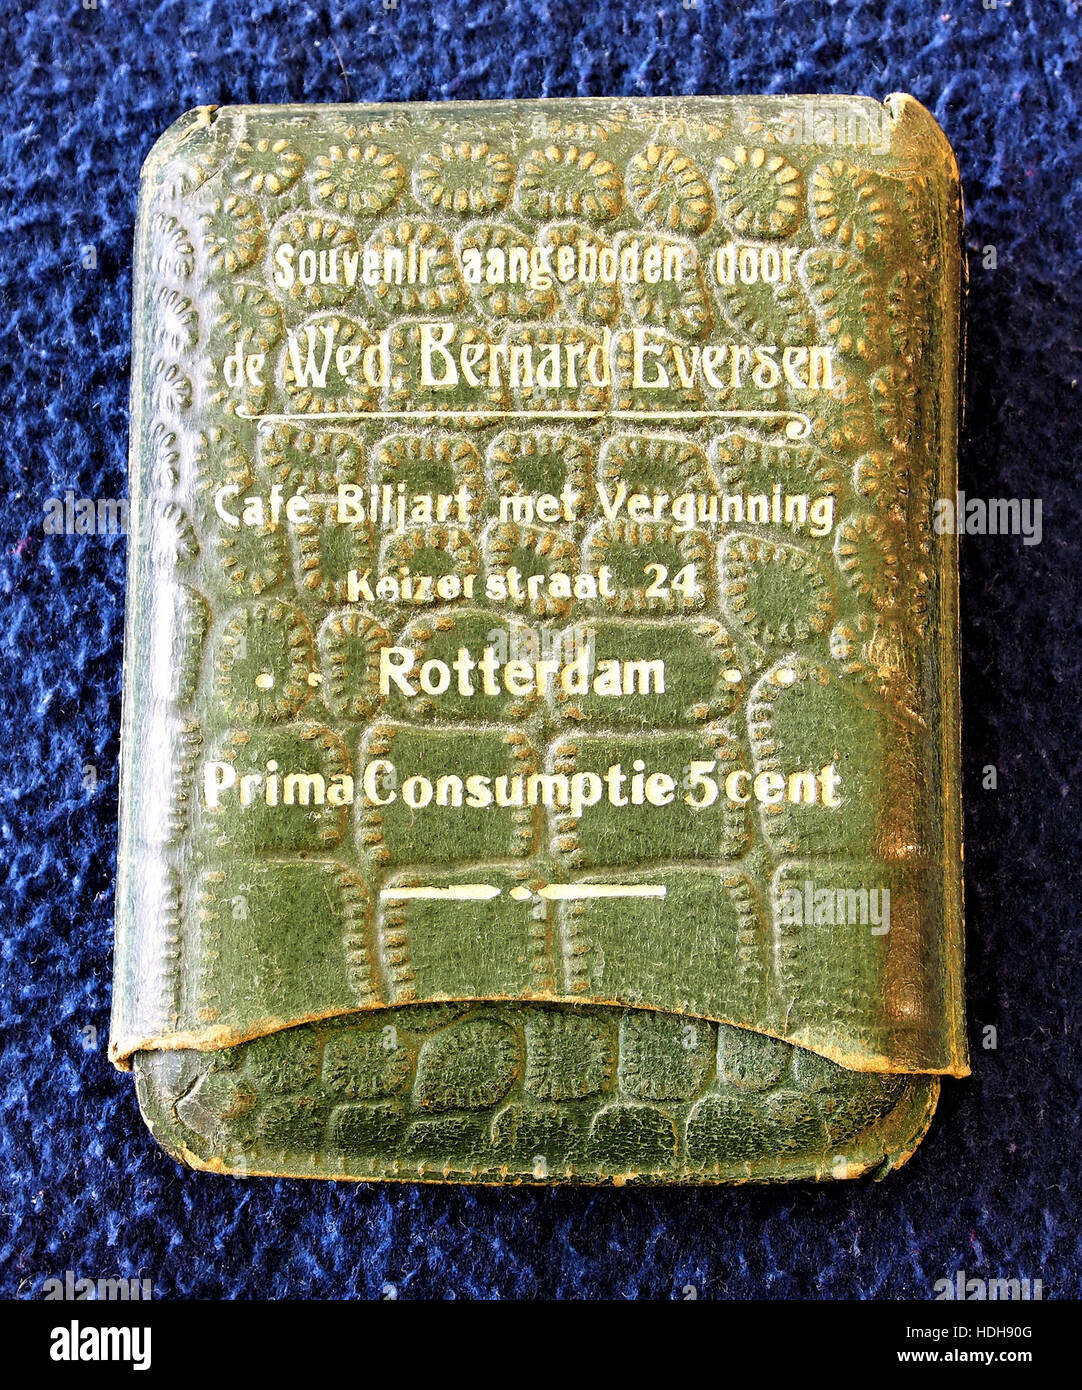 Mon souvenir Bernard Eversen Biljart, Keizersstraat Rotterdam 24 pic1 Banque D'Images